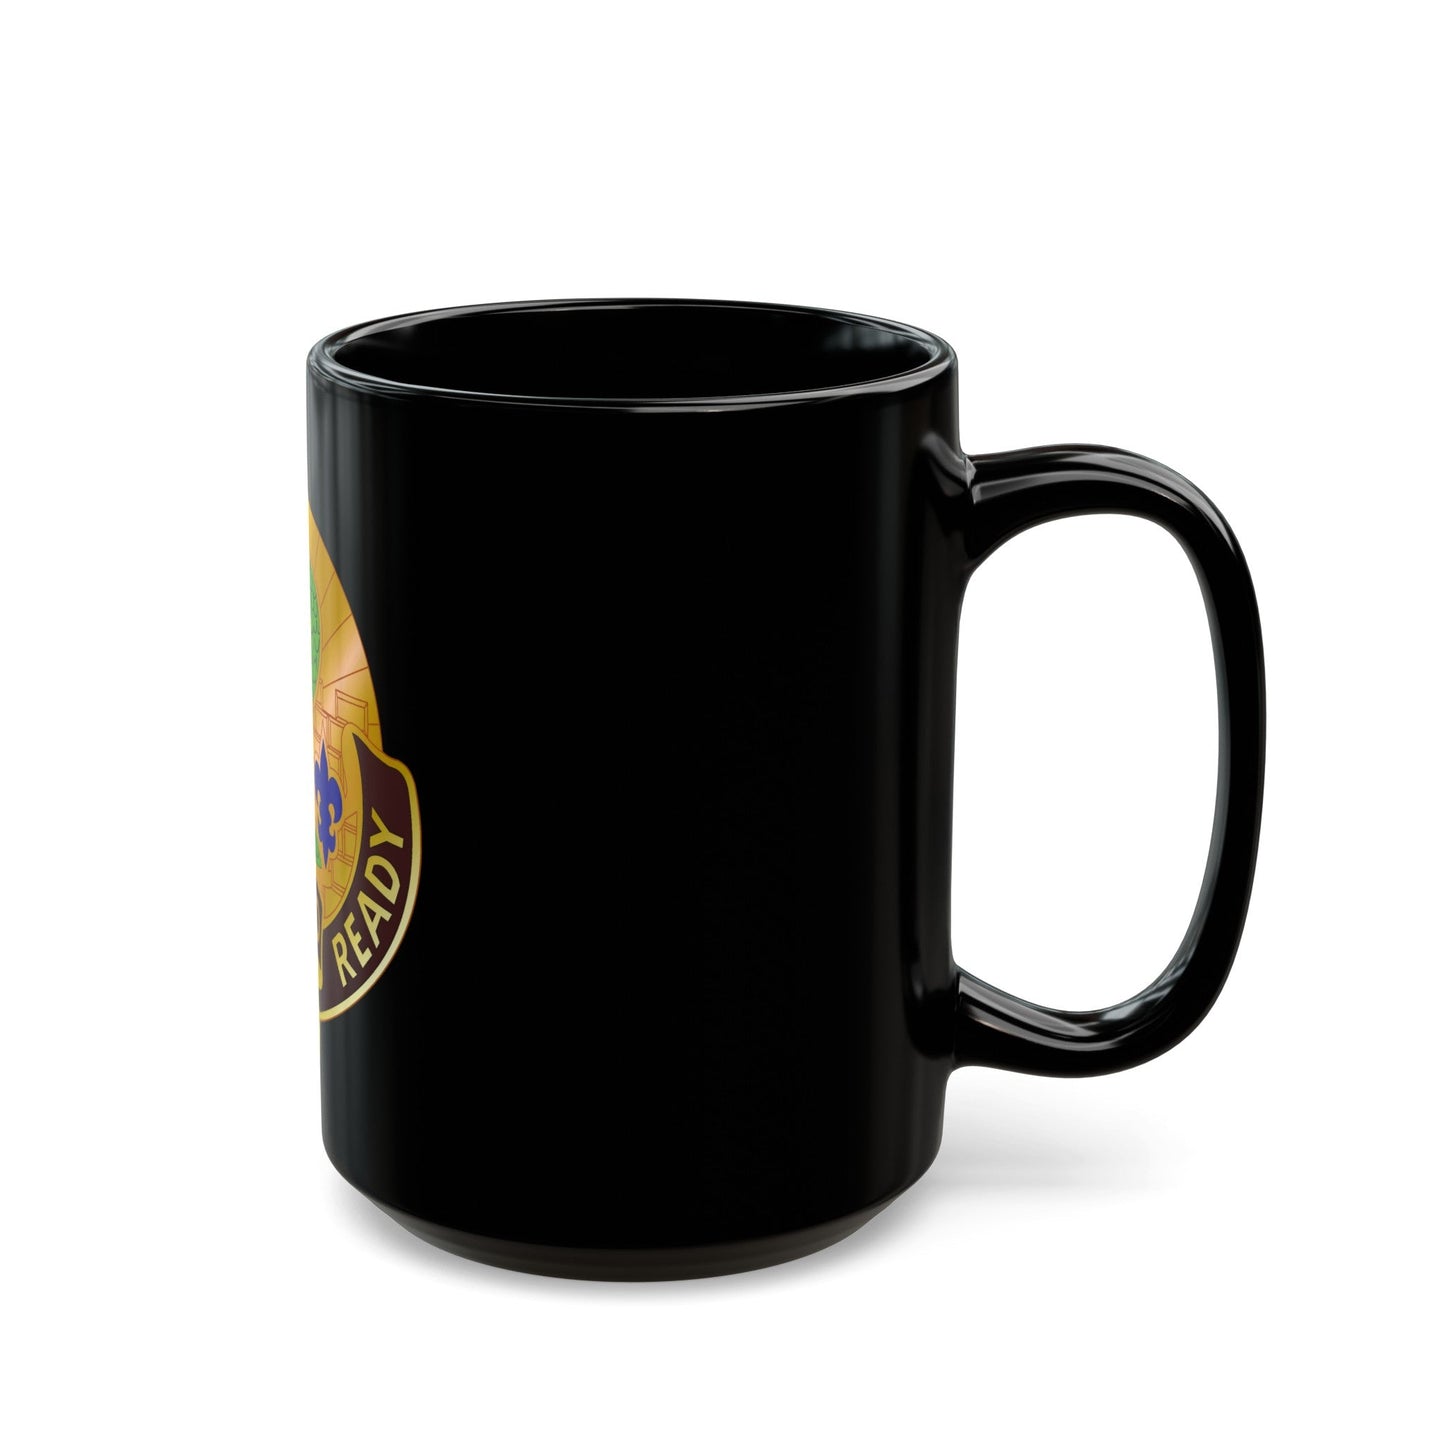 4 Medical Brigade 2 (U.S. Army) Black Coffee Mug